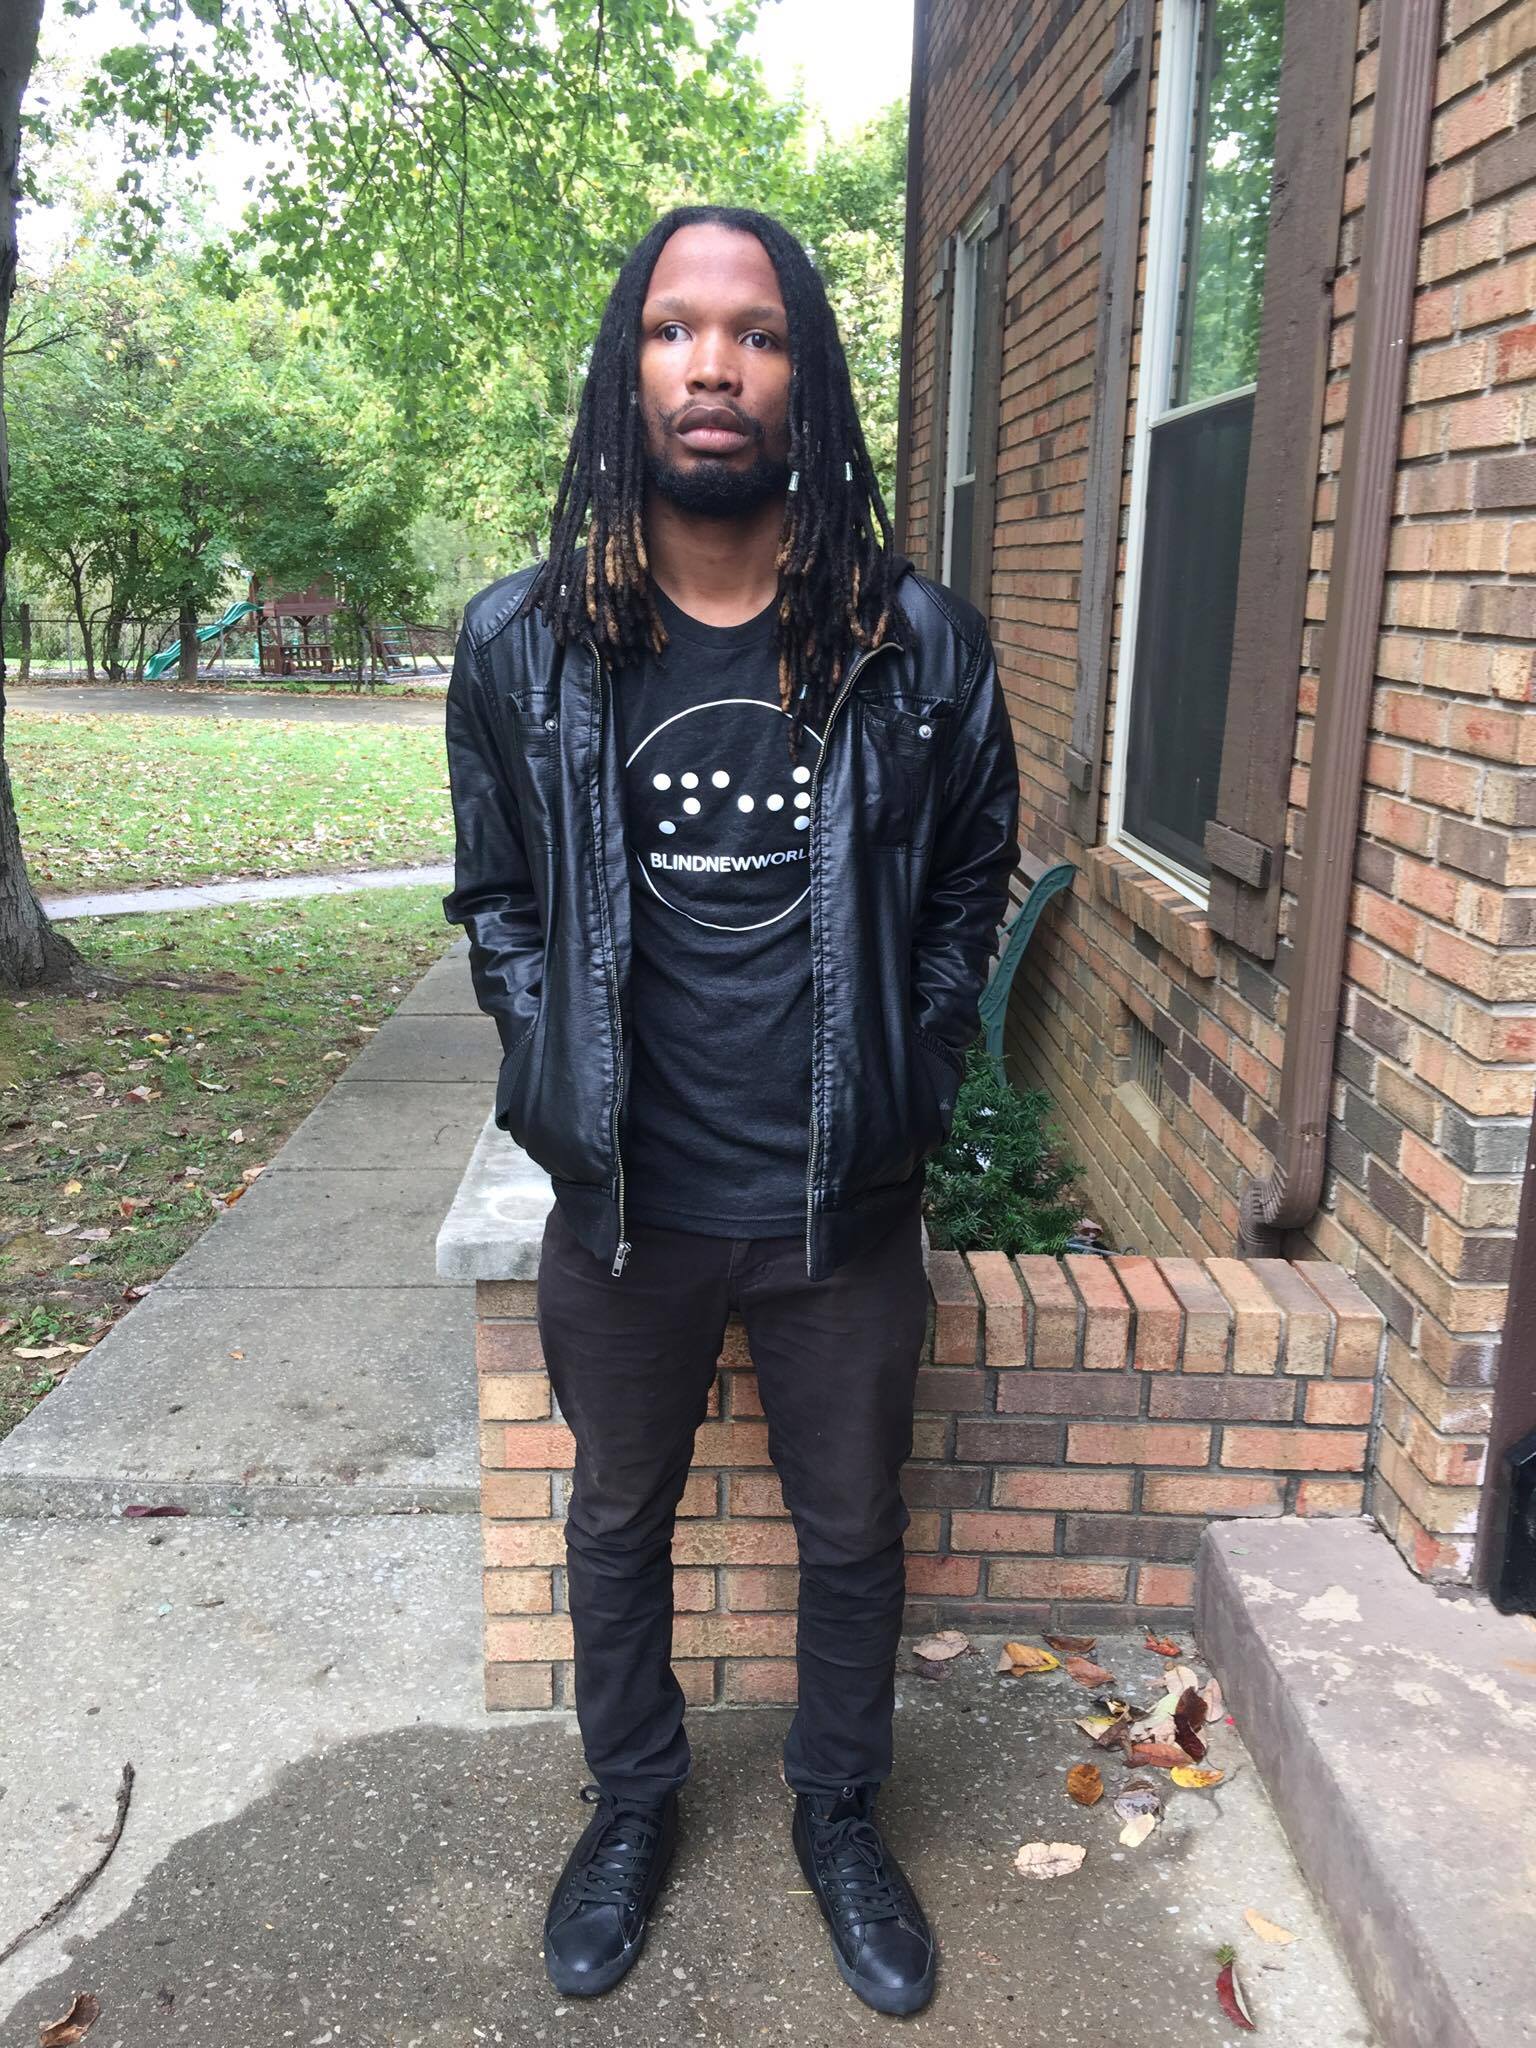 NovoCain, a blind hip-hop artist, wearing a BlindNewWorld t-shirt